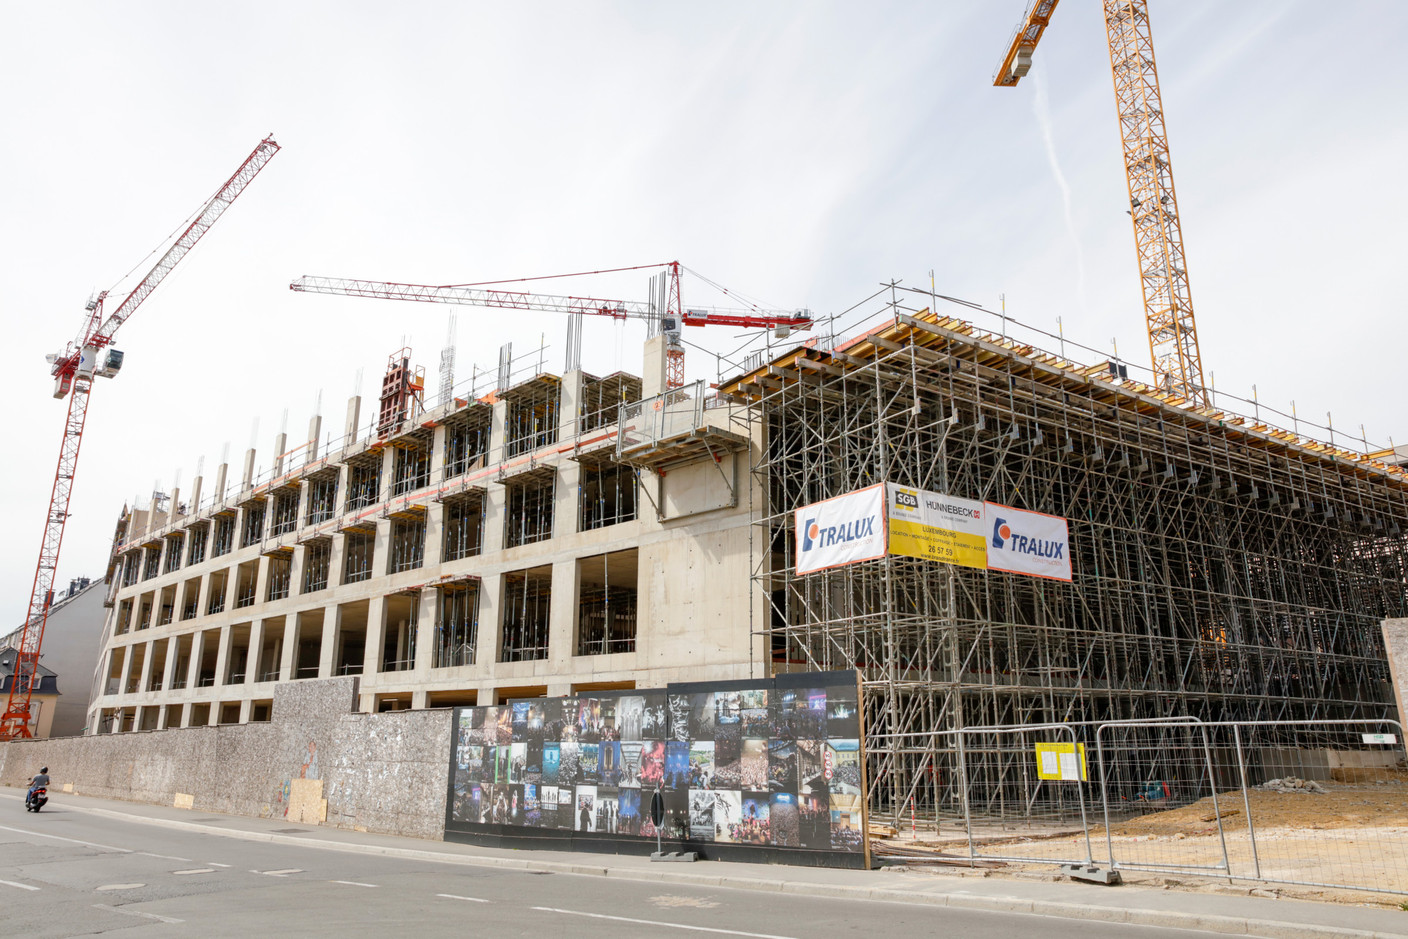 Vue du chantier de l’immeuble administratif le 23 juillet 2020. (Photo: Romain Gamba / Maison Moderne)